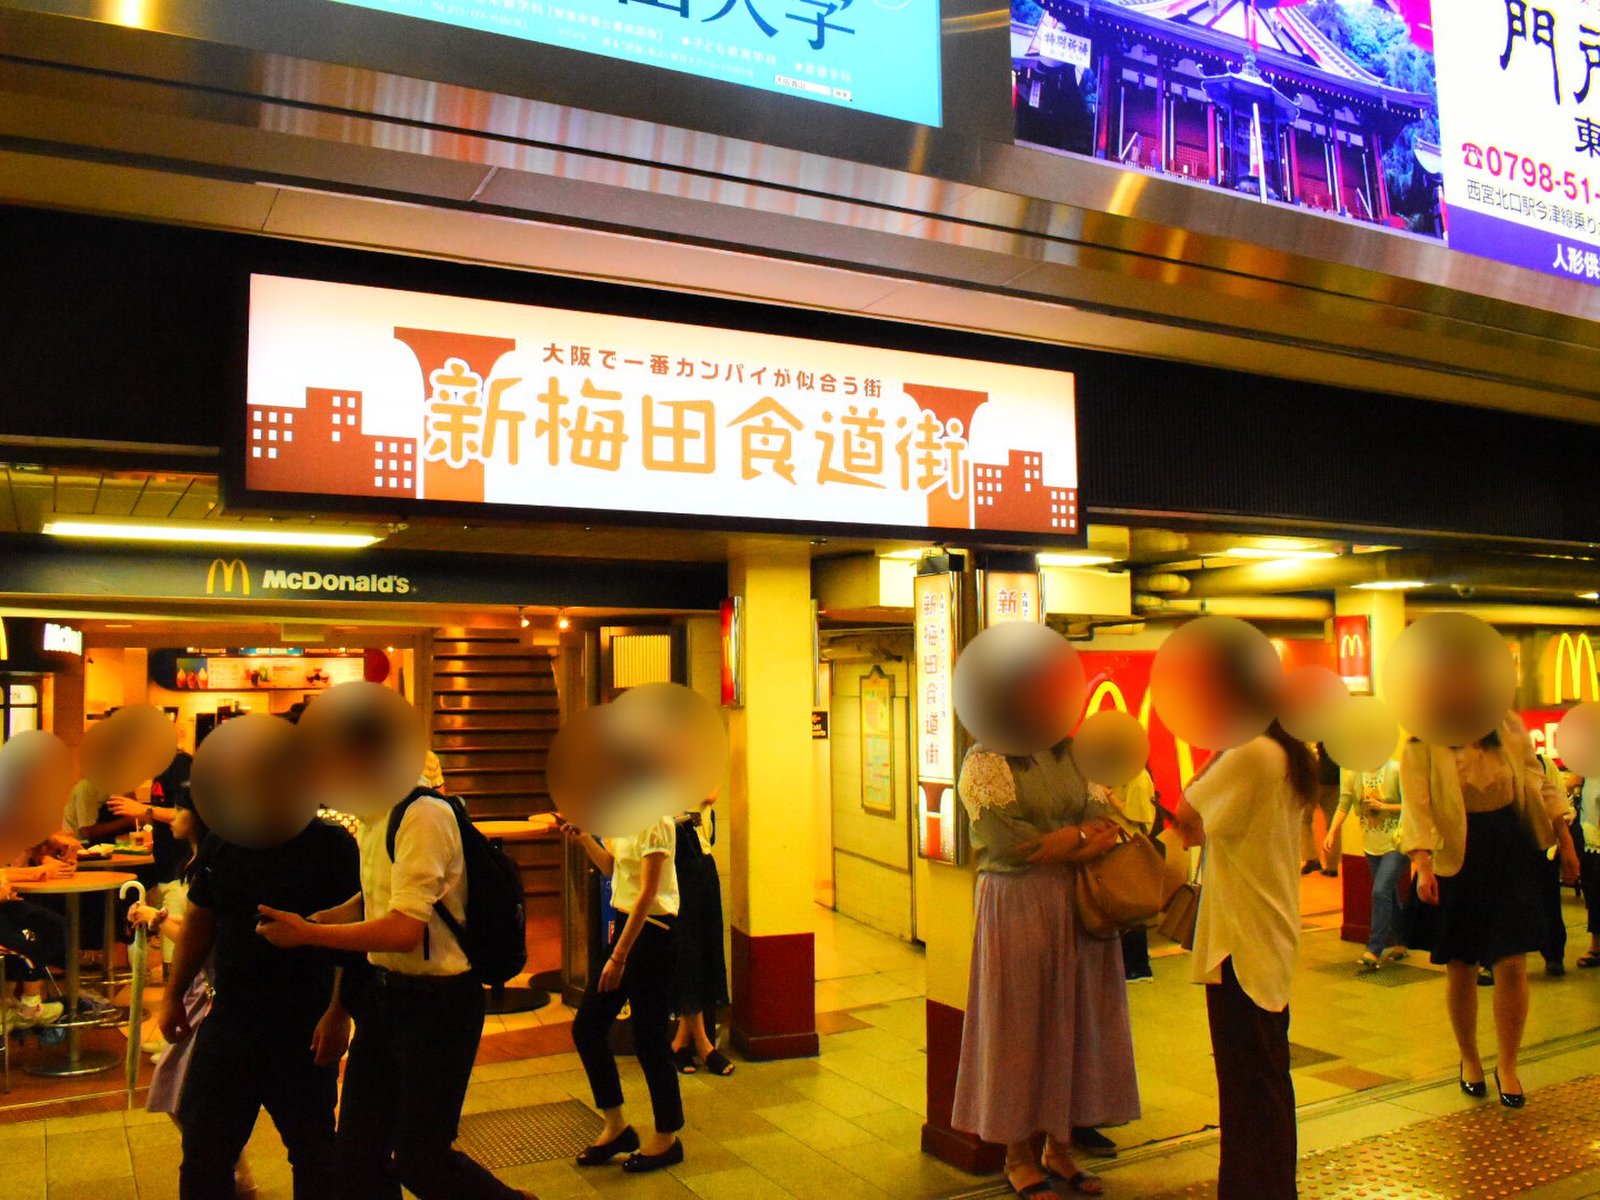 大阪名物を堪能できる グルメの迷宮 新梅田食道街へ 夜デートにおすすめしたい絶景カフェもご紹介 Playlife プレイライフ